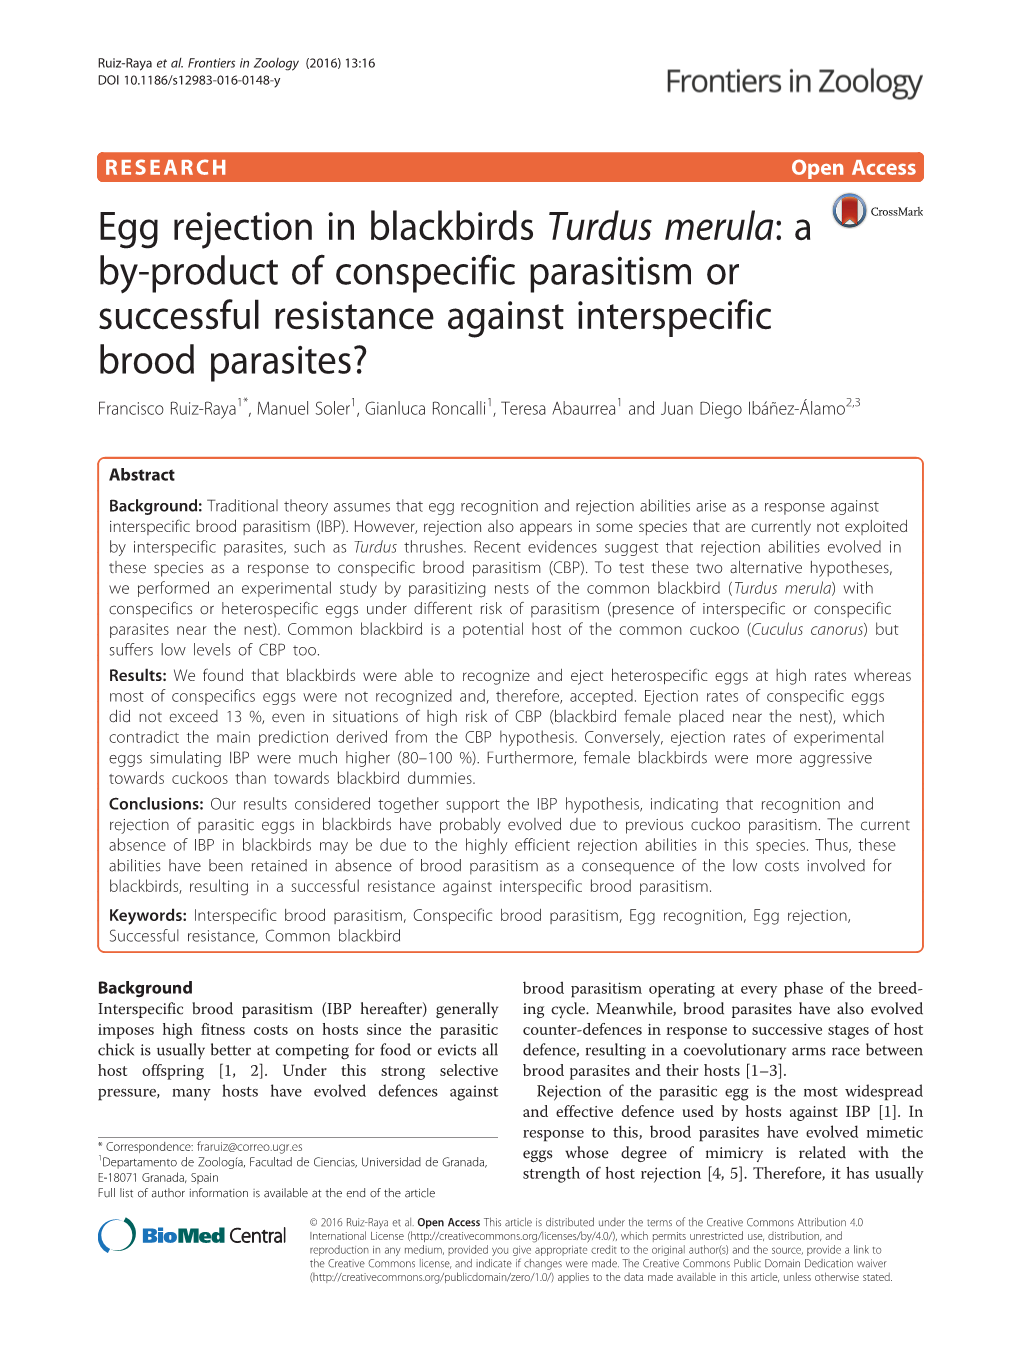 Egg Rejection in Blackbirds Turdus Merula